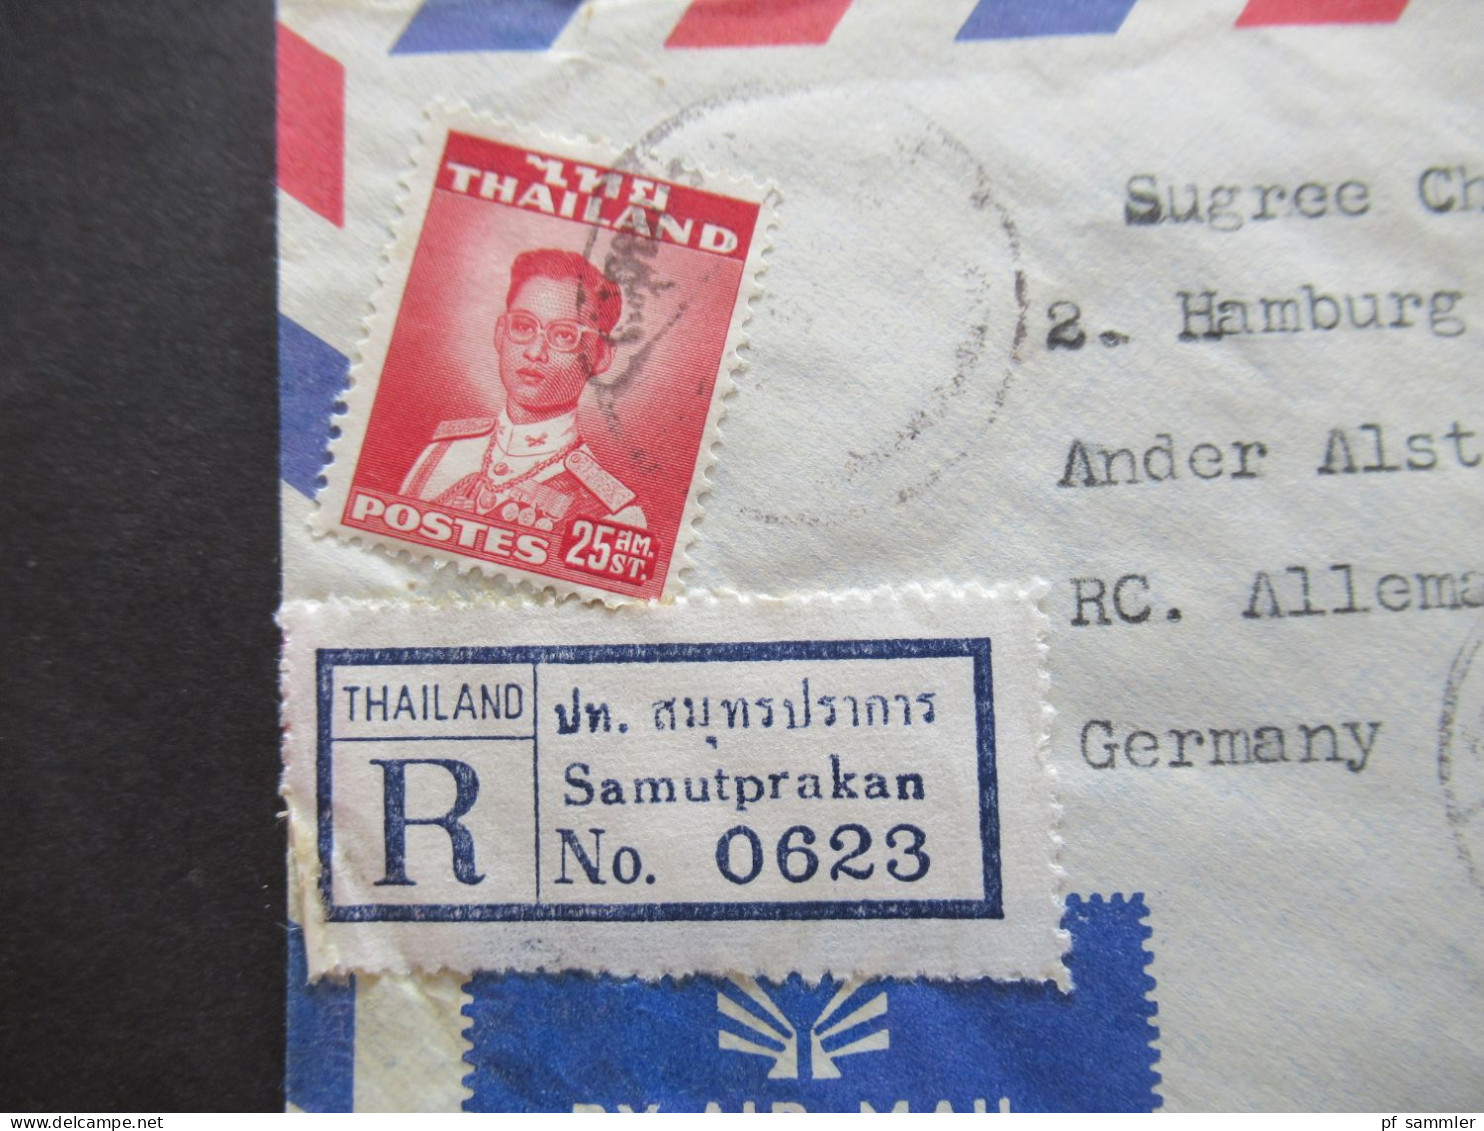 Asien Thailand 1965 Einschreiben / Registered Letter Luftpost / Air Mail Samutprakan - Hamburg - Thailand